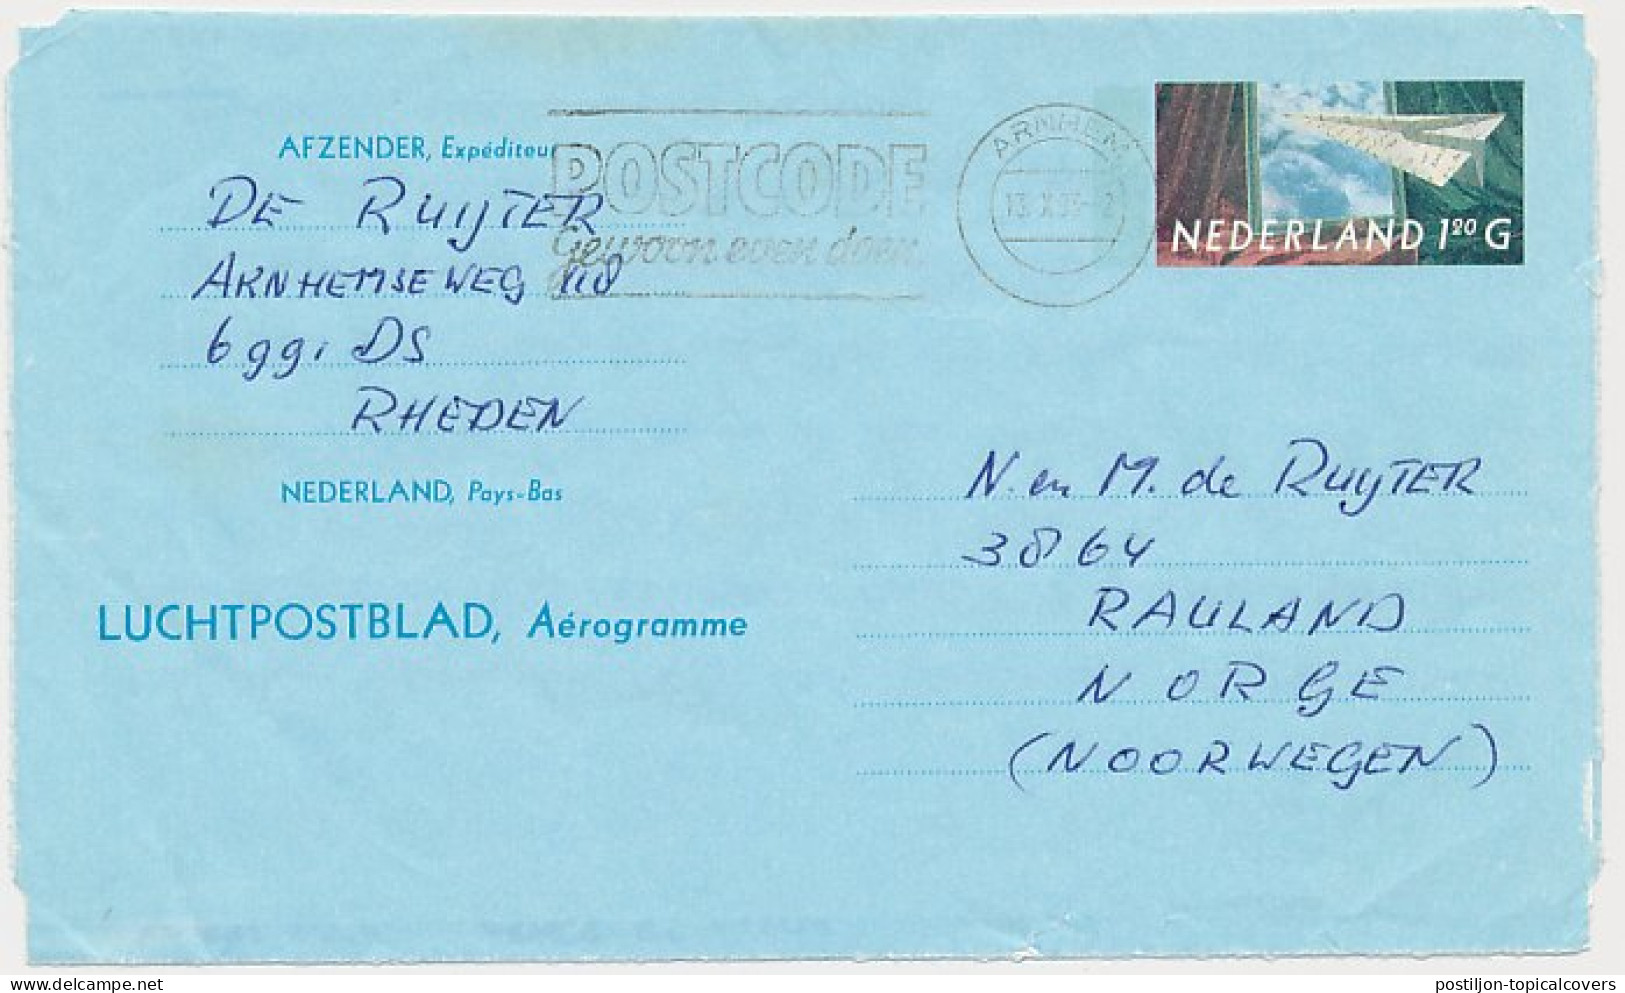 Luchtpostblad G. 32 Arnhem - Rauland Noorwegen 1993 - Material Postal